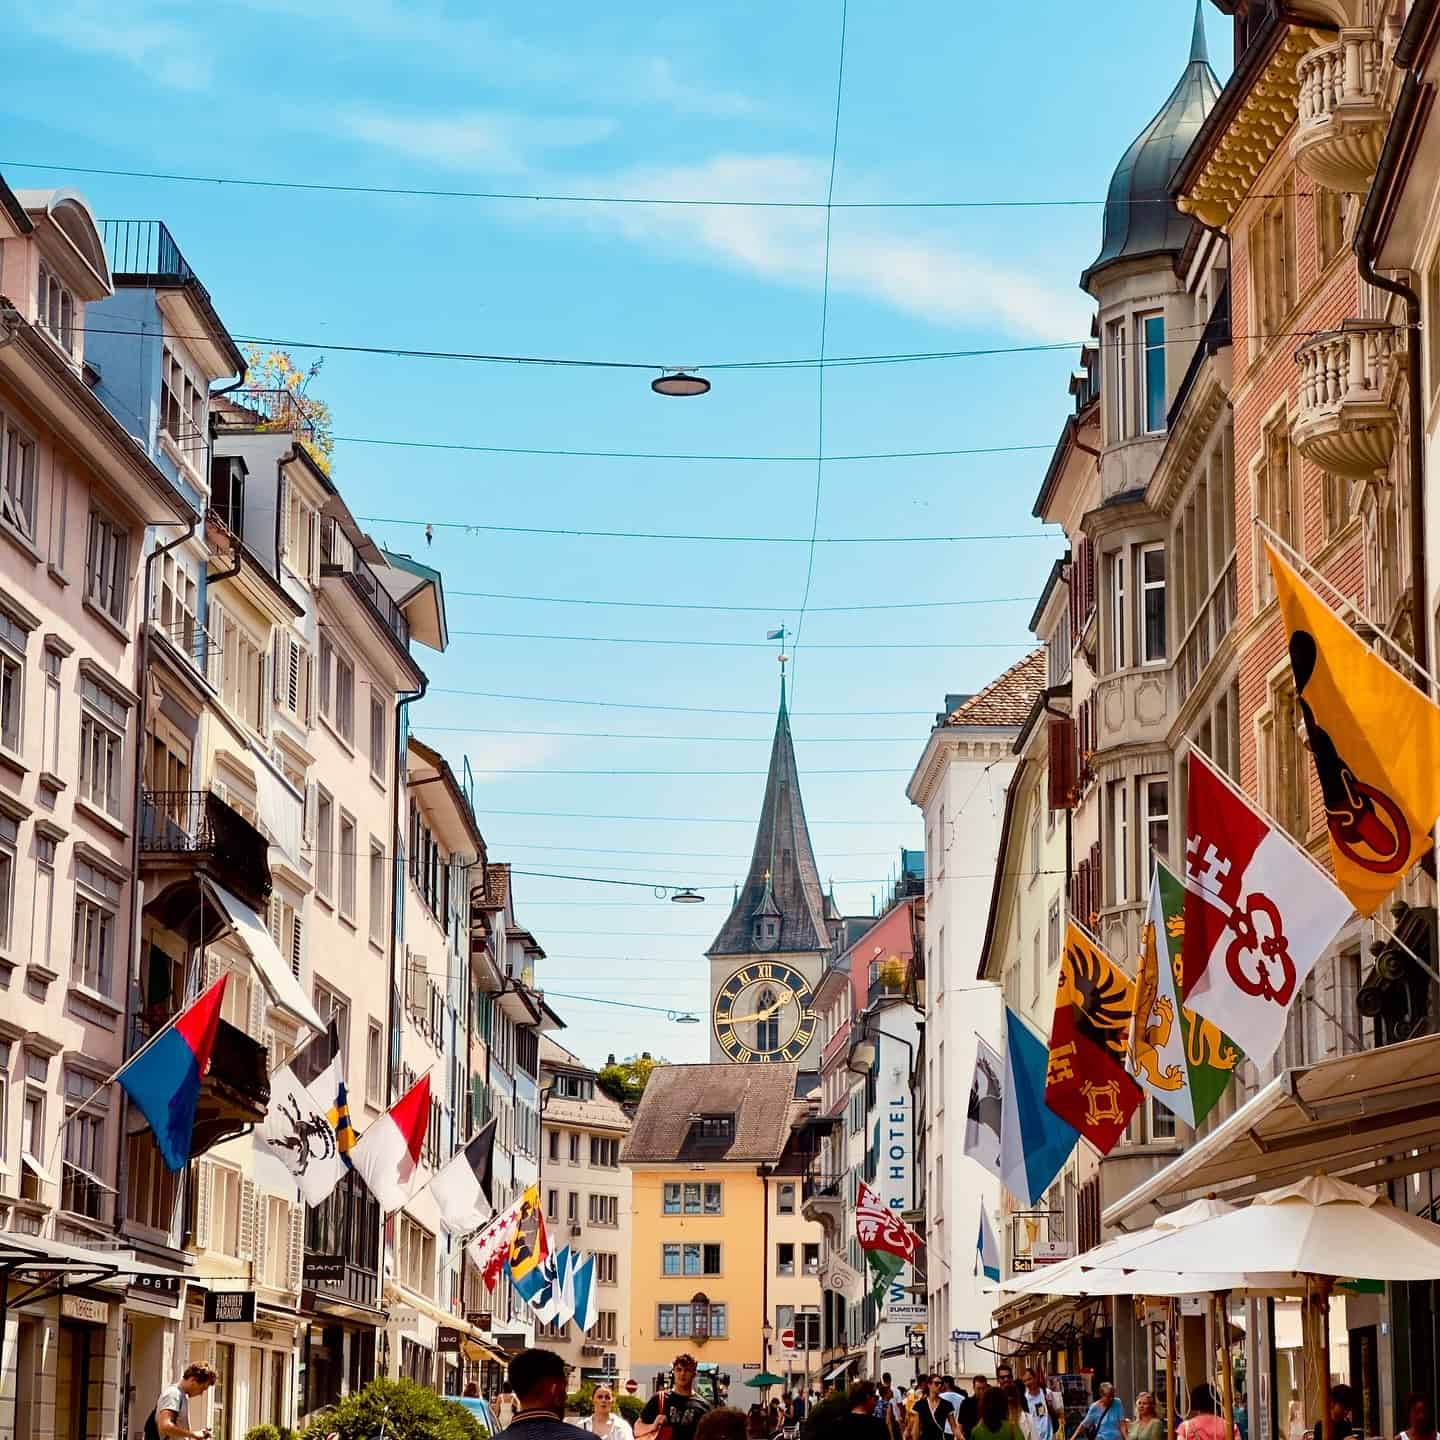 Zurich - best city in Europe to go shopping